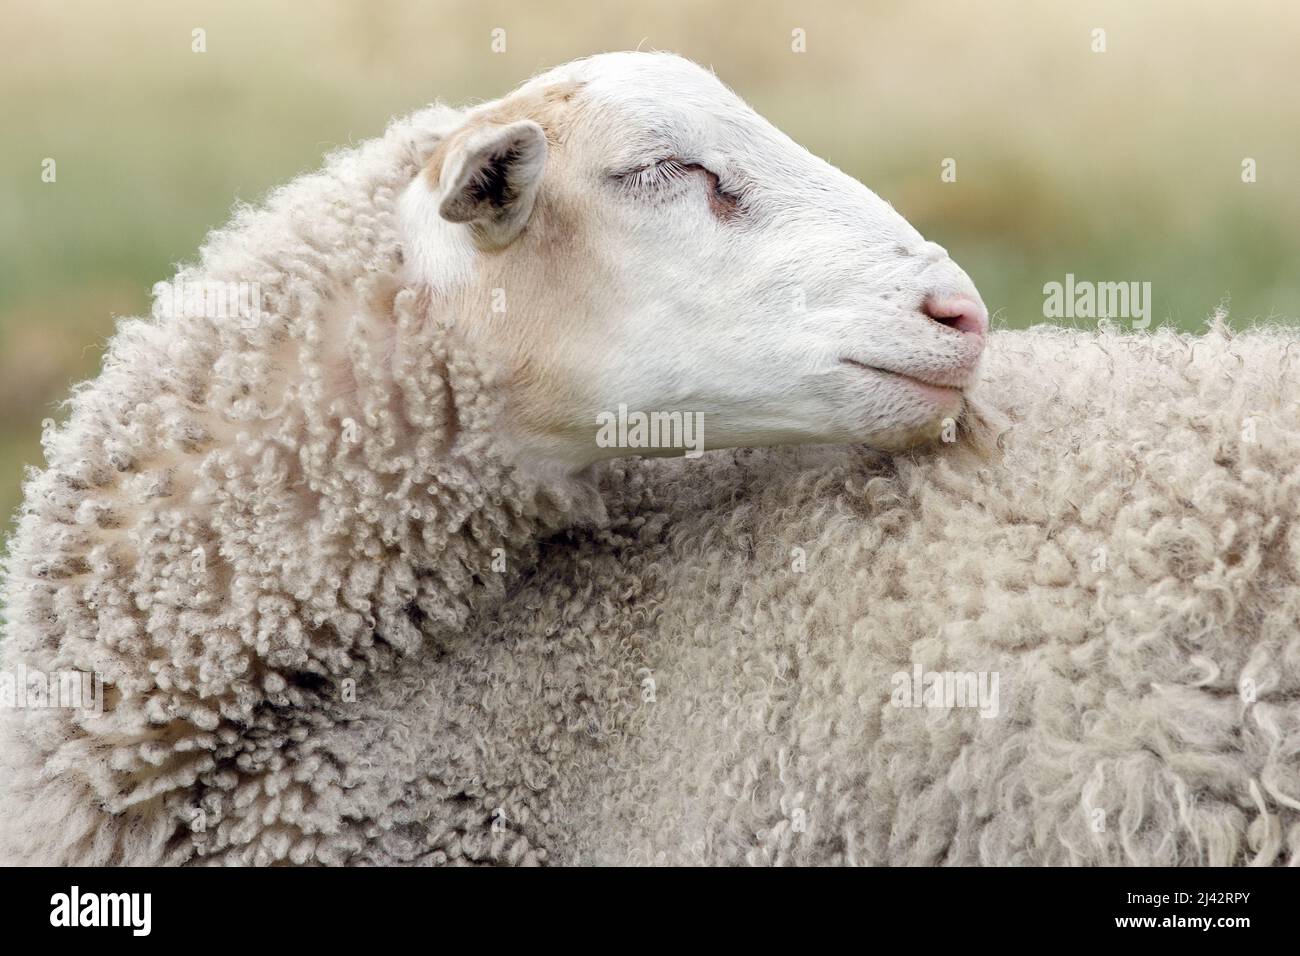 Weiße Schafe aus der Nähe, Augen geschlossen, als ob sie träumen. Schaffell Mantel kann im Detail gesehen werden. Stockfoto